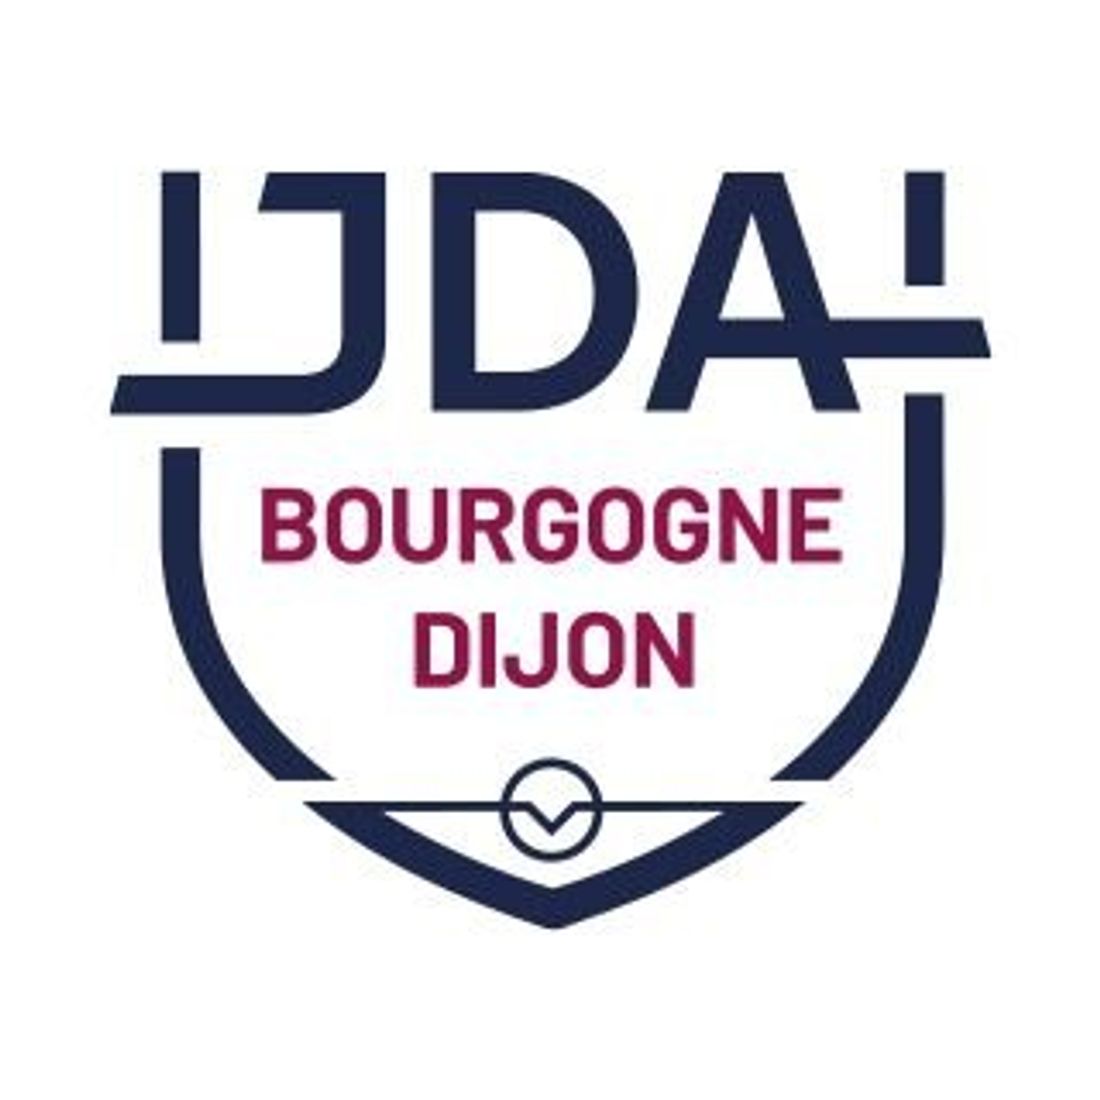 Voici donc le nouveau logo de la JDA 